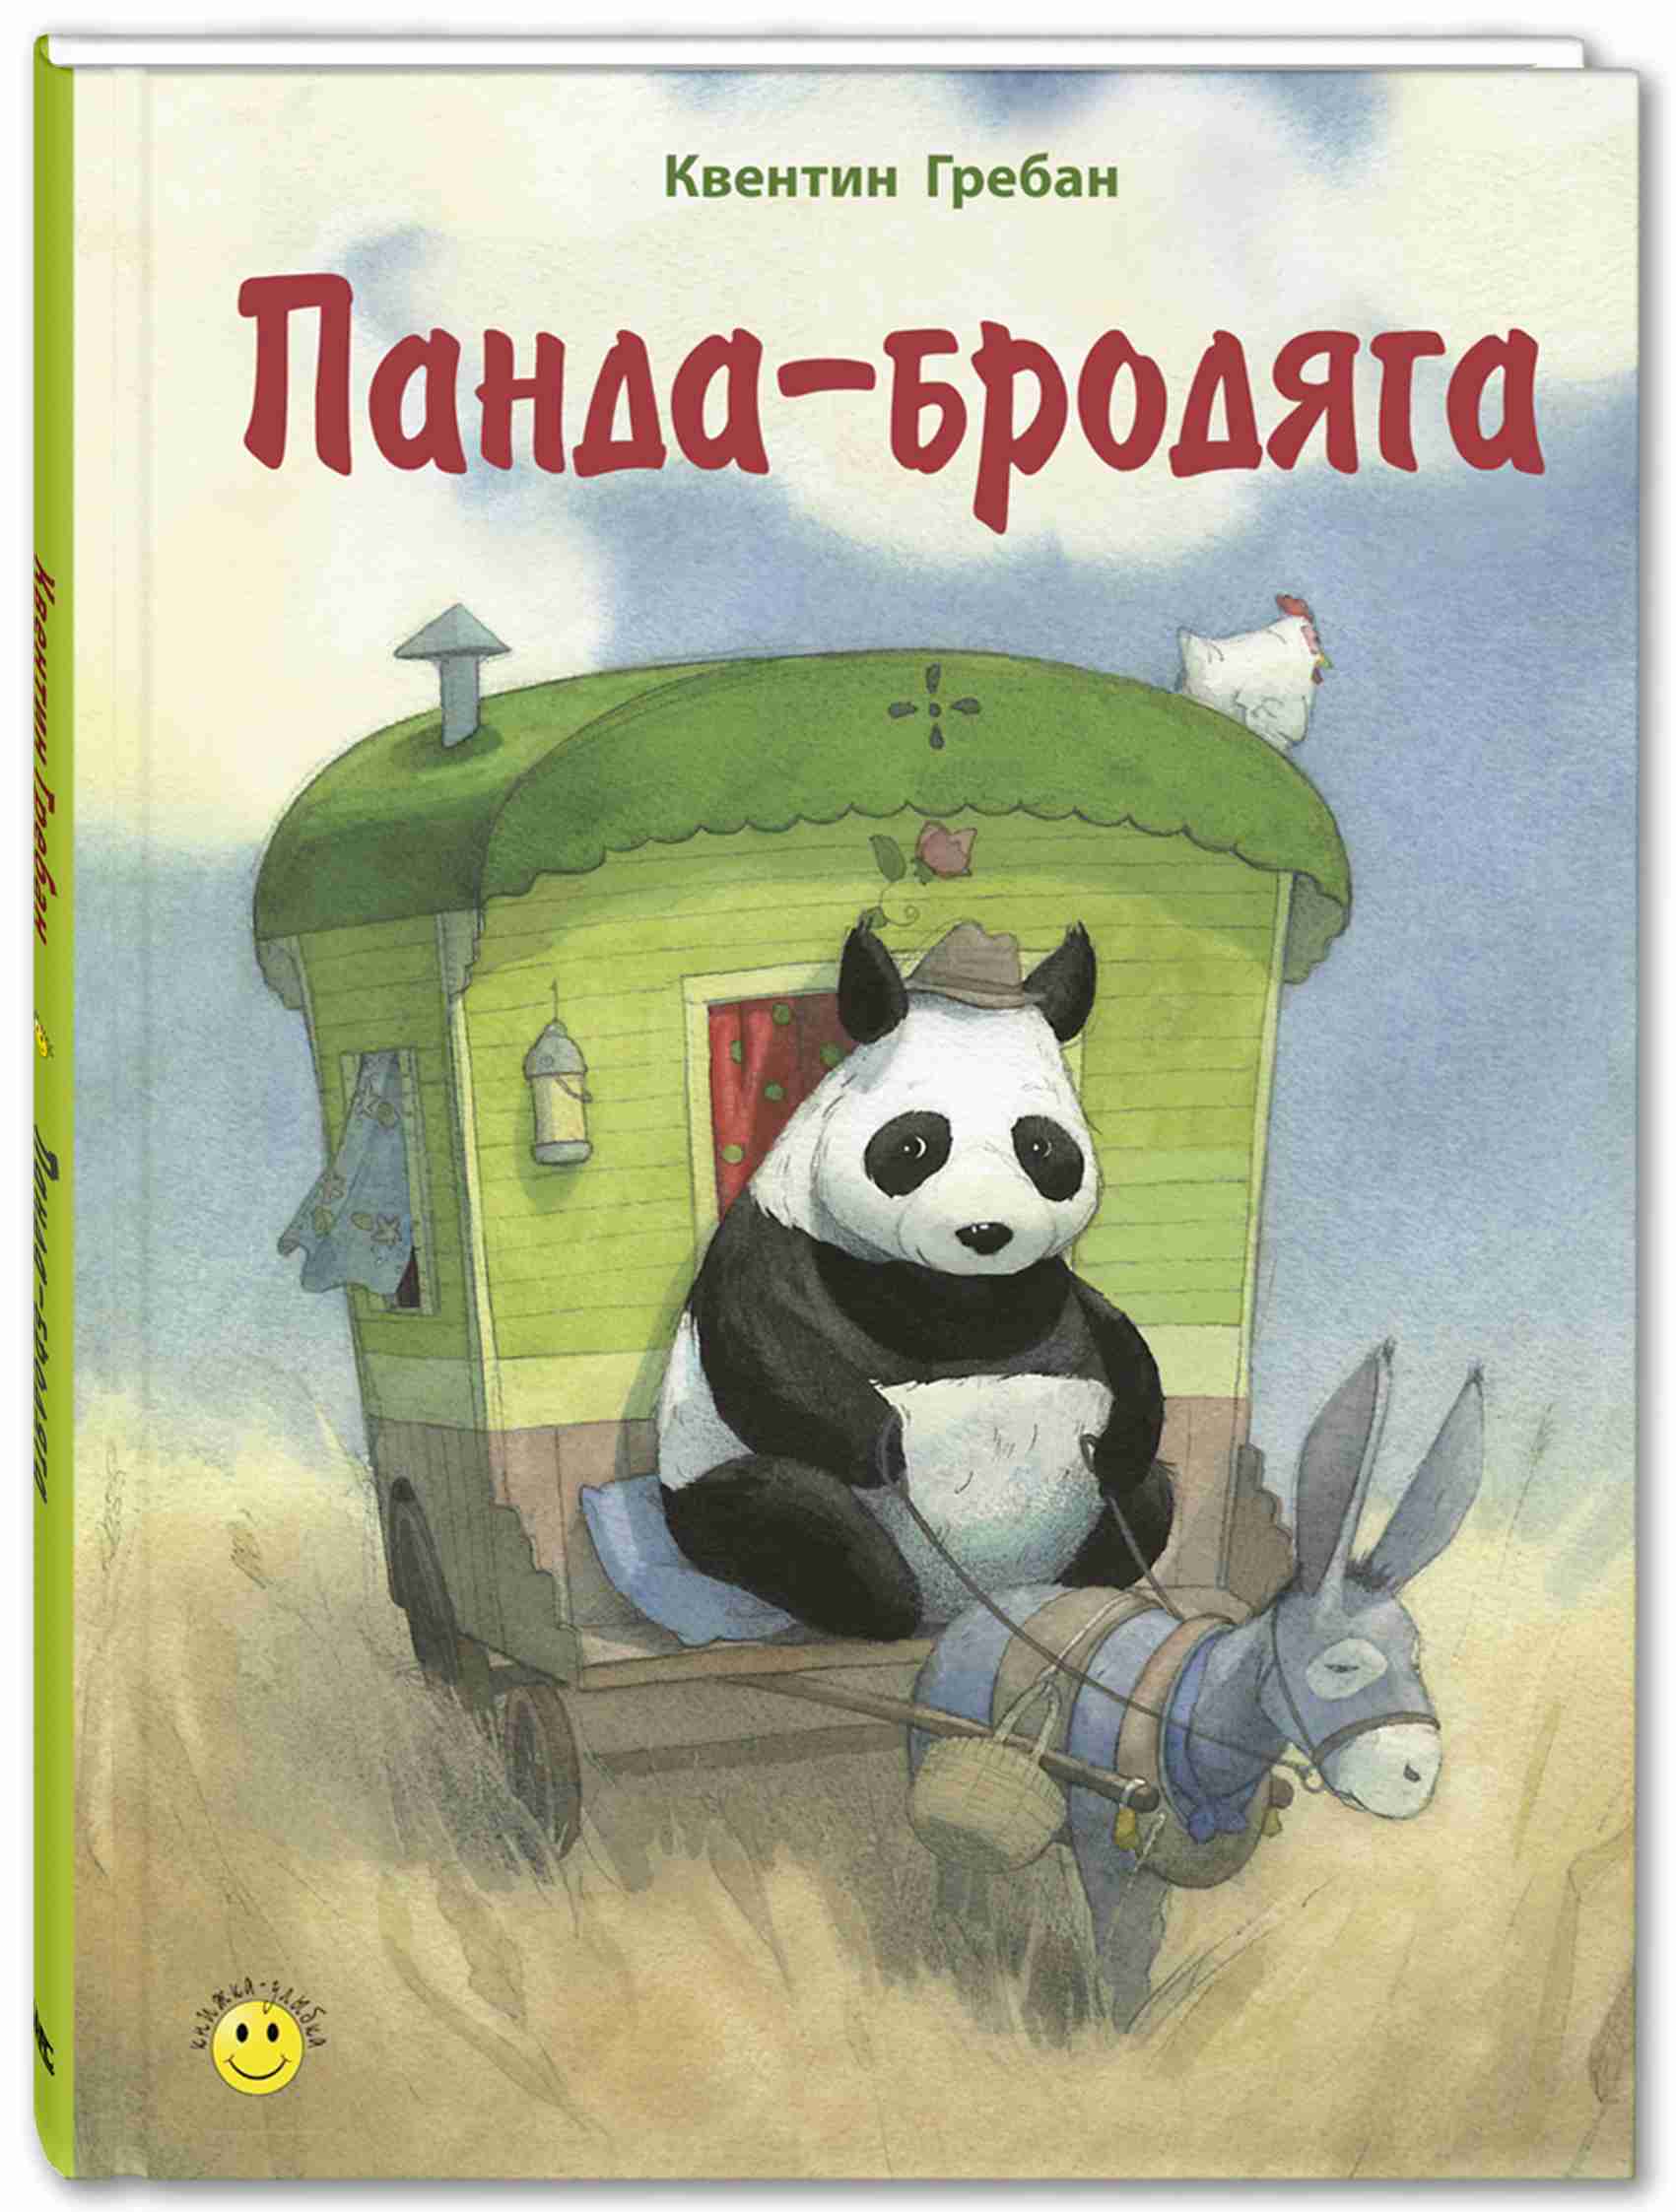 panda-brodjaga-0